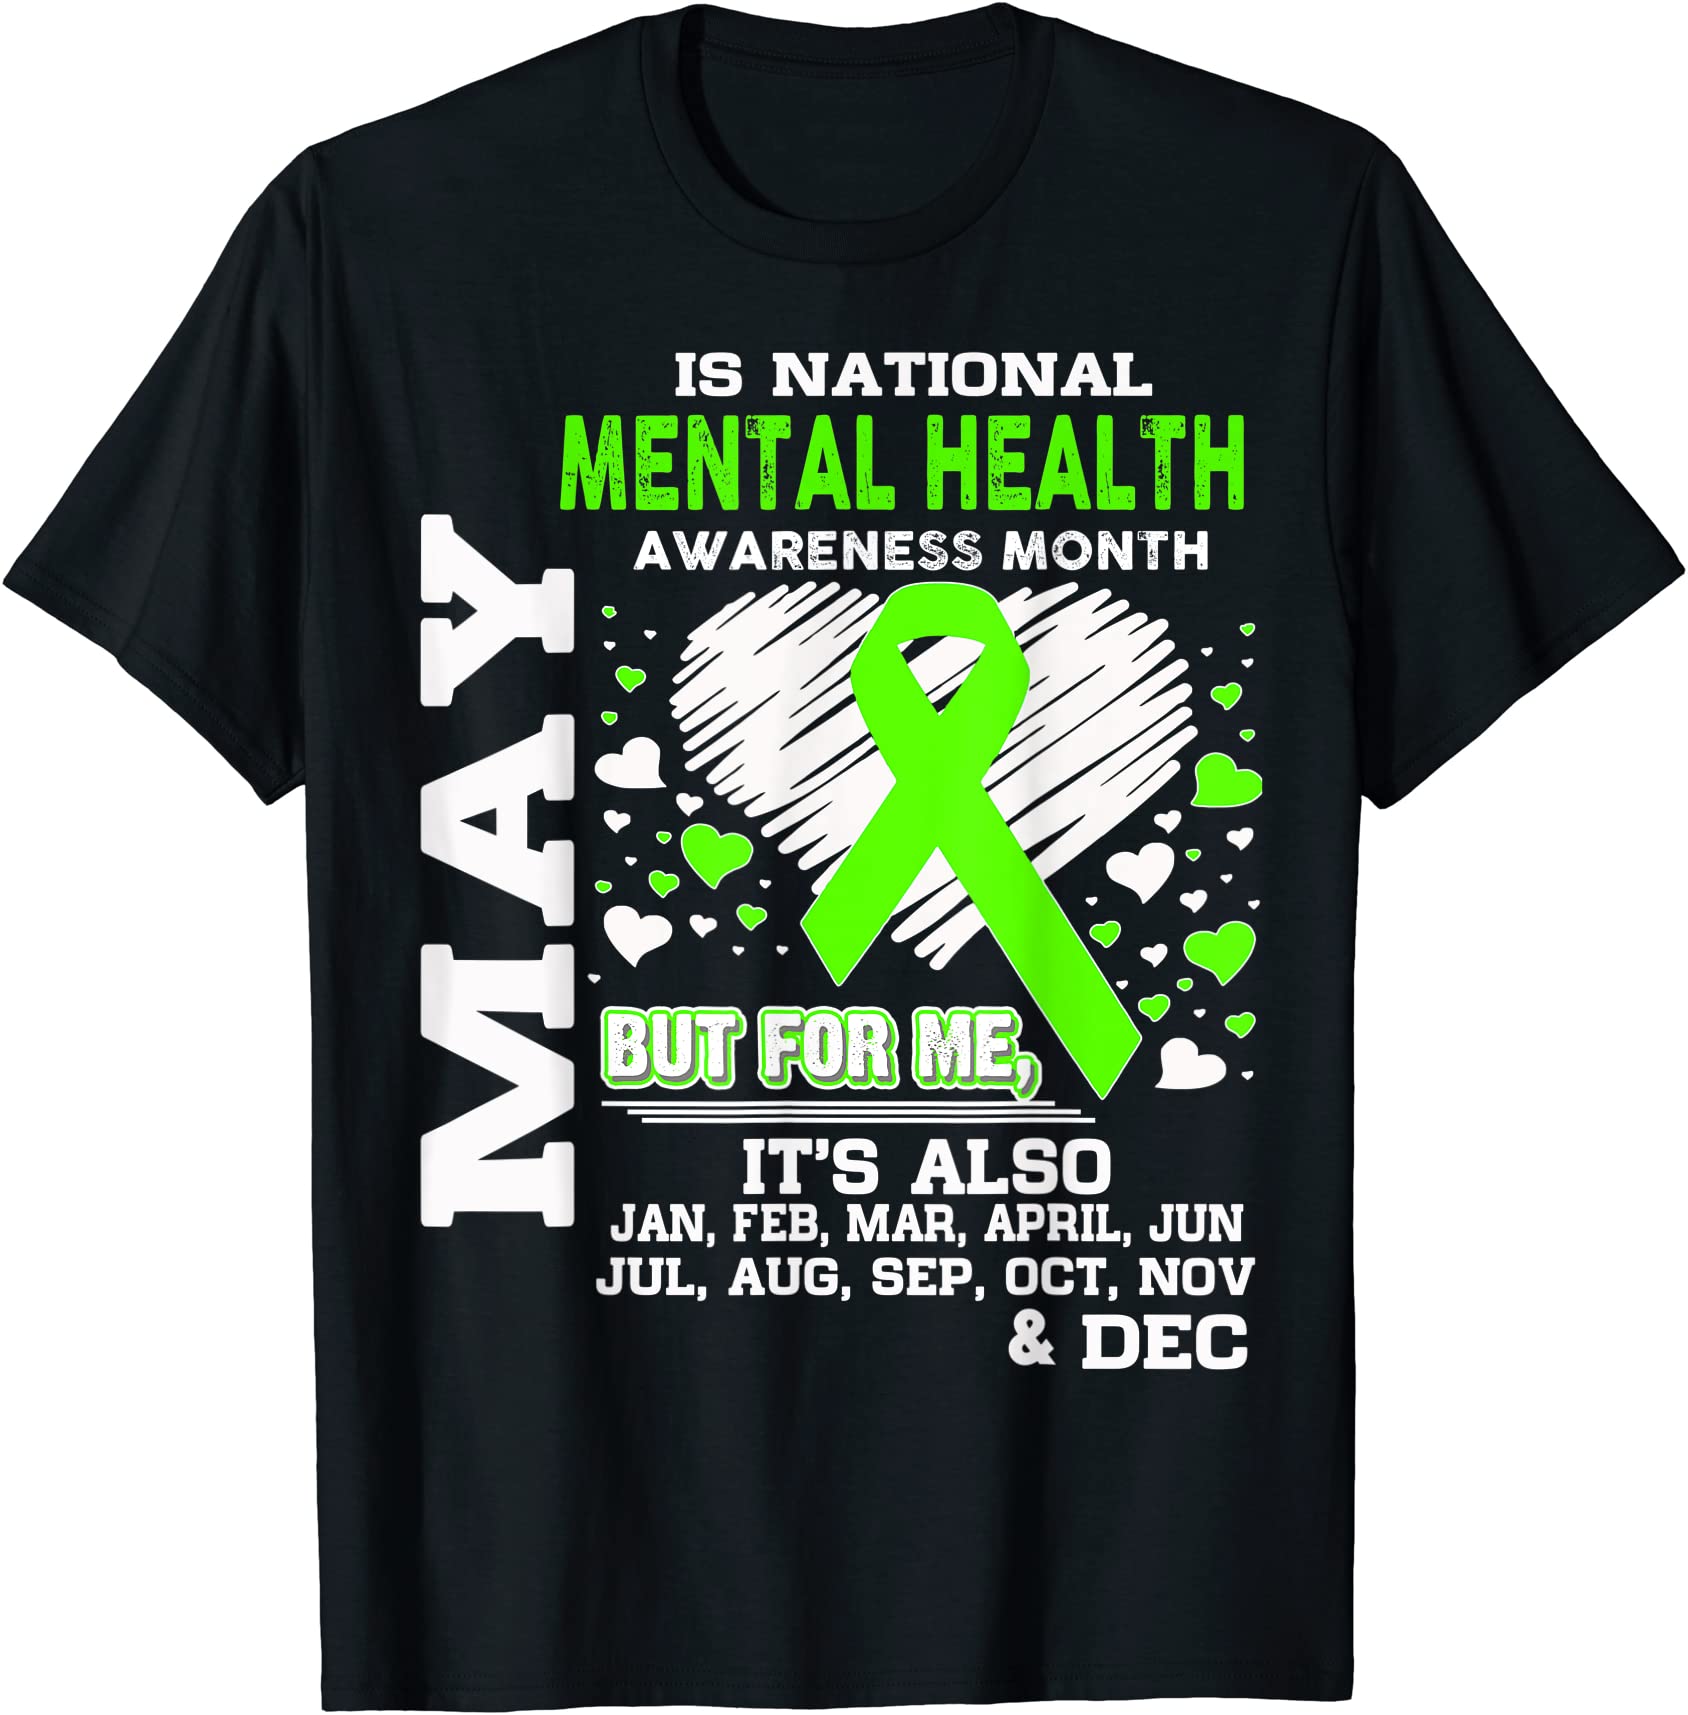 may is mental health awareness month shirt men - Buy t-shirt designs